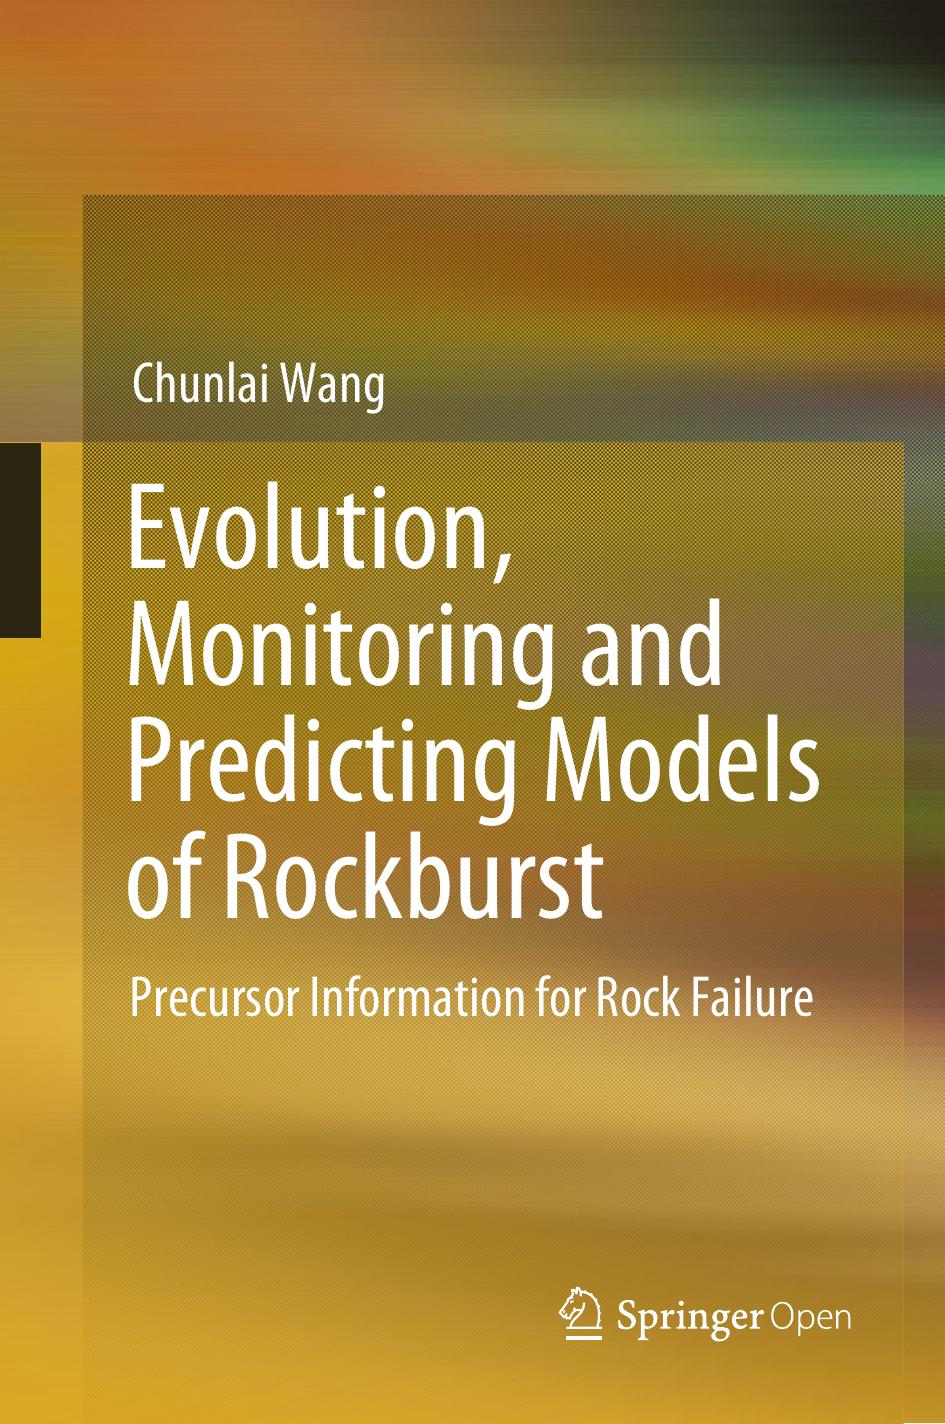 Evolution, Monitoring and Predicting Models of Rockburst by Chunlai Wang